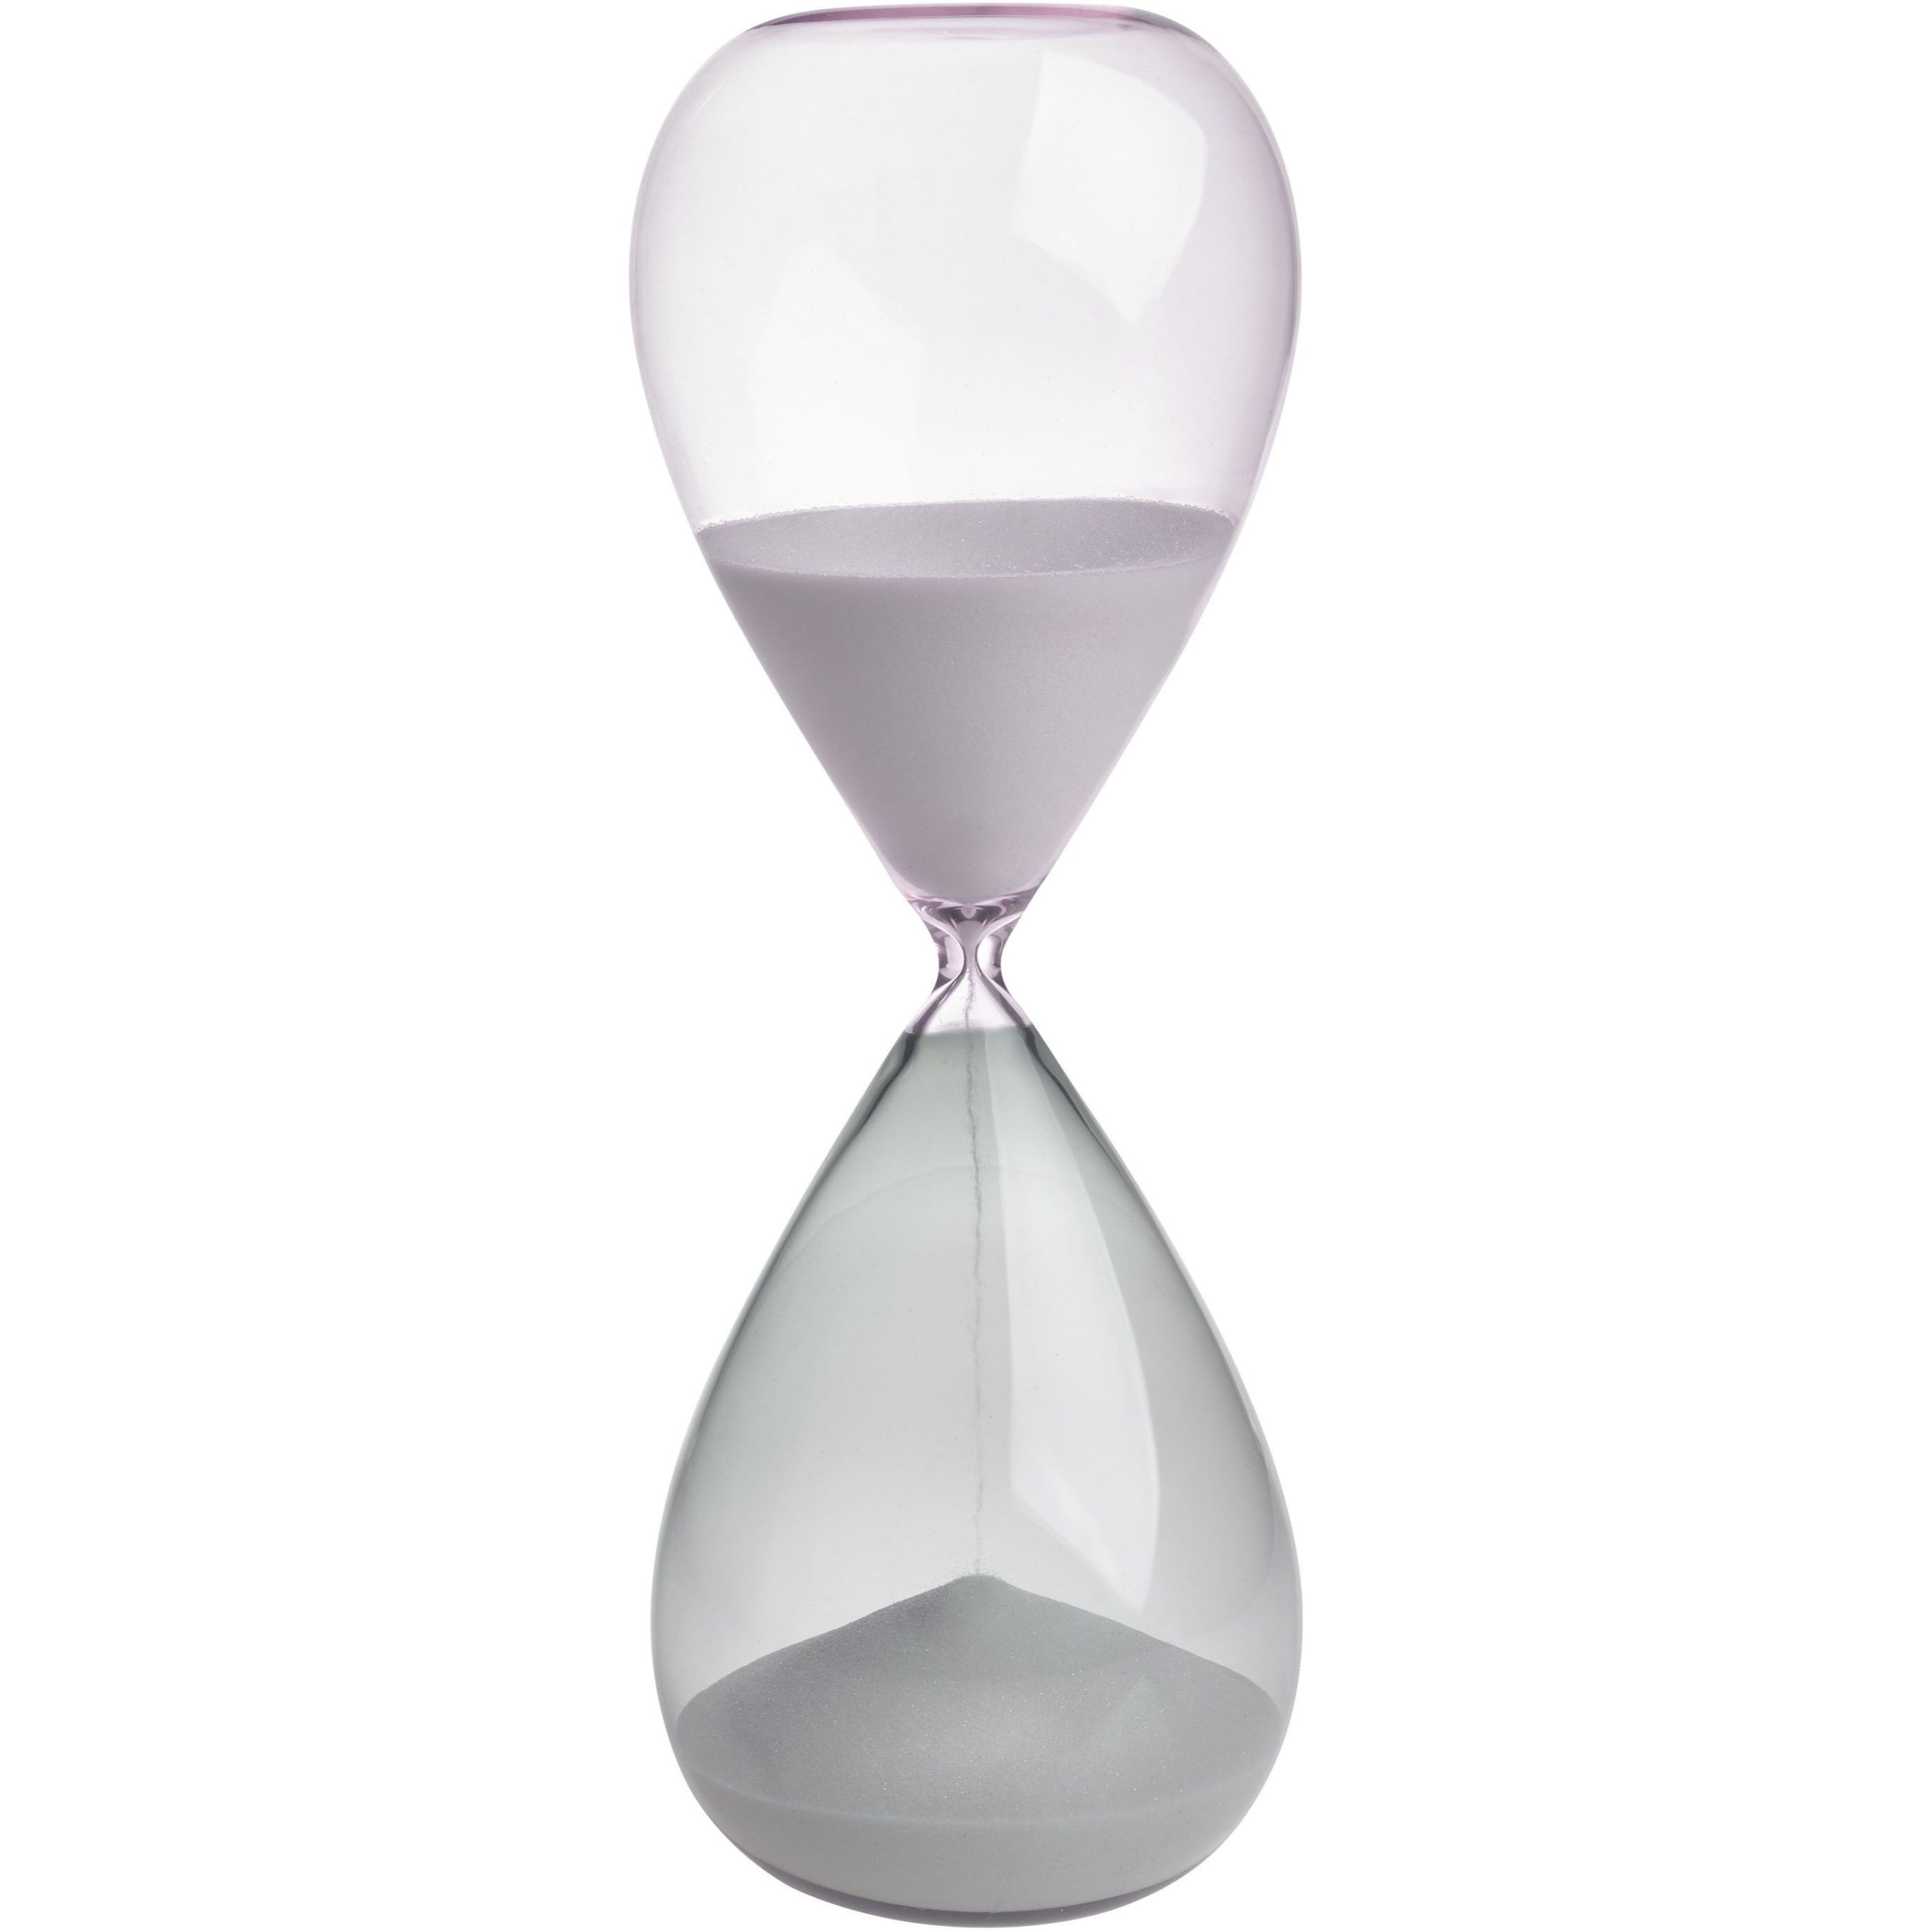 Песочные часы TFA (1860100240), 30 минут, таймер, белый песок, серо-розовое стекло, 23 x 9 см